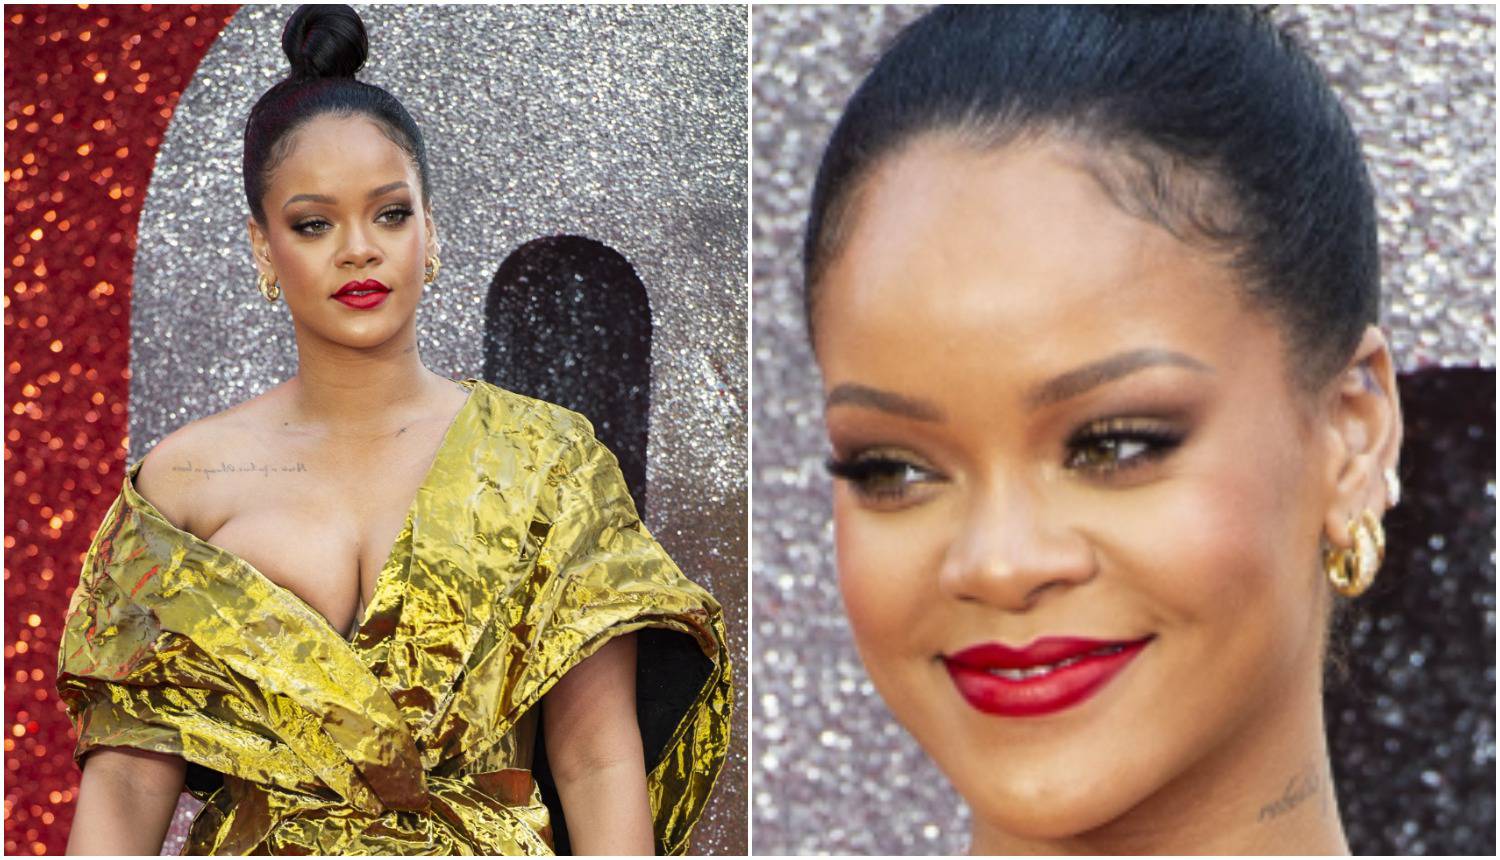 Zahtjevna Rihanna: Na modelu testira kakve obrve želi imati...